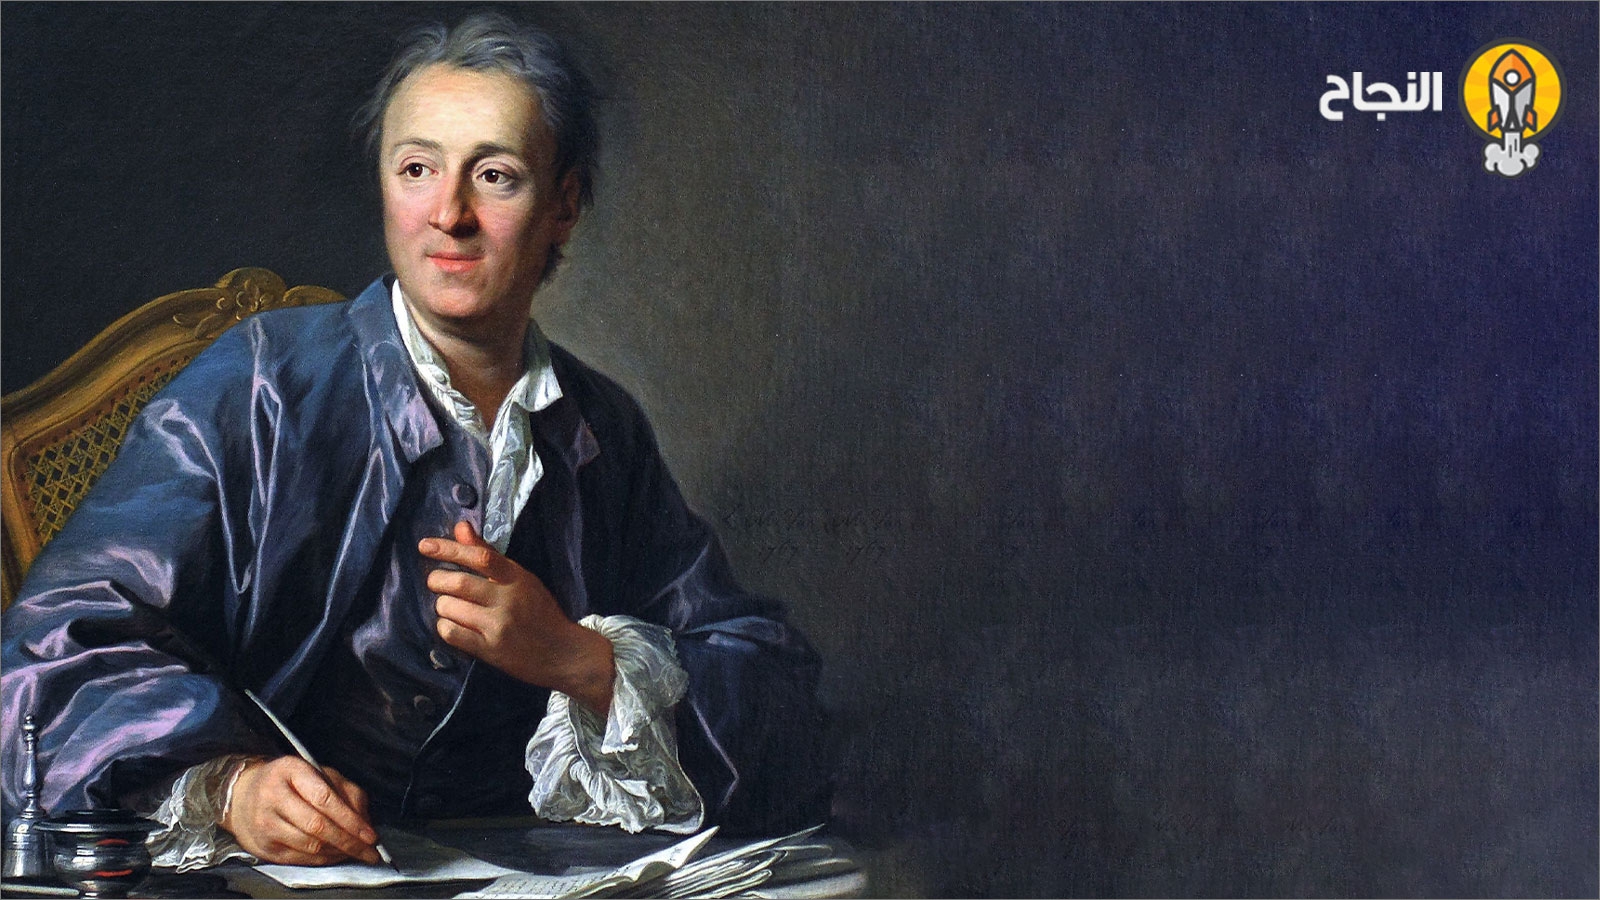 الفيلسوف الفرنسي الشهير دنيس ديدرو (Denis Diderot)